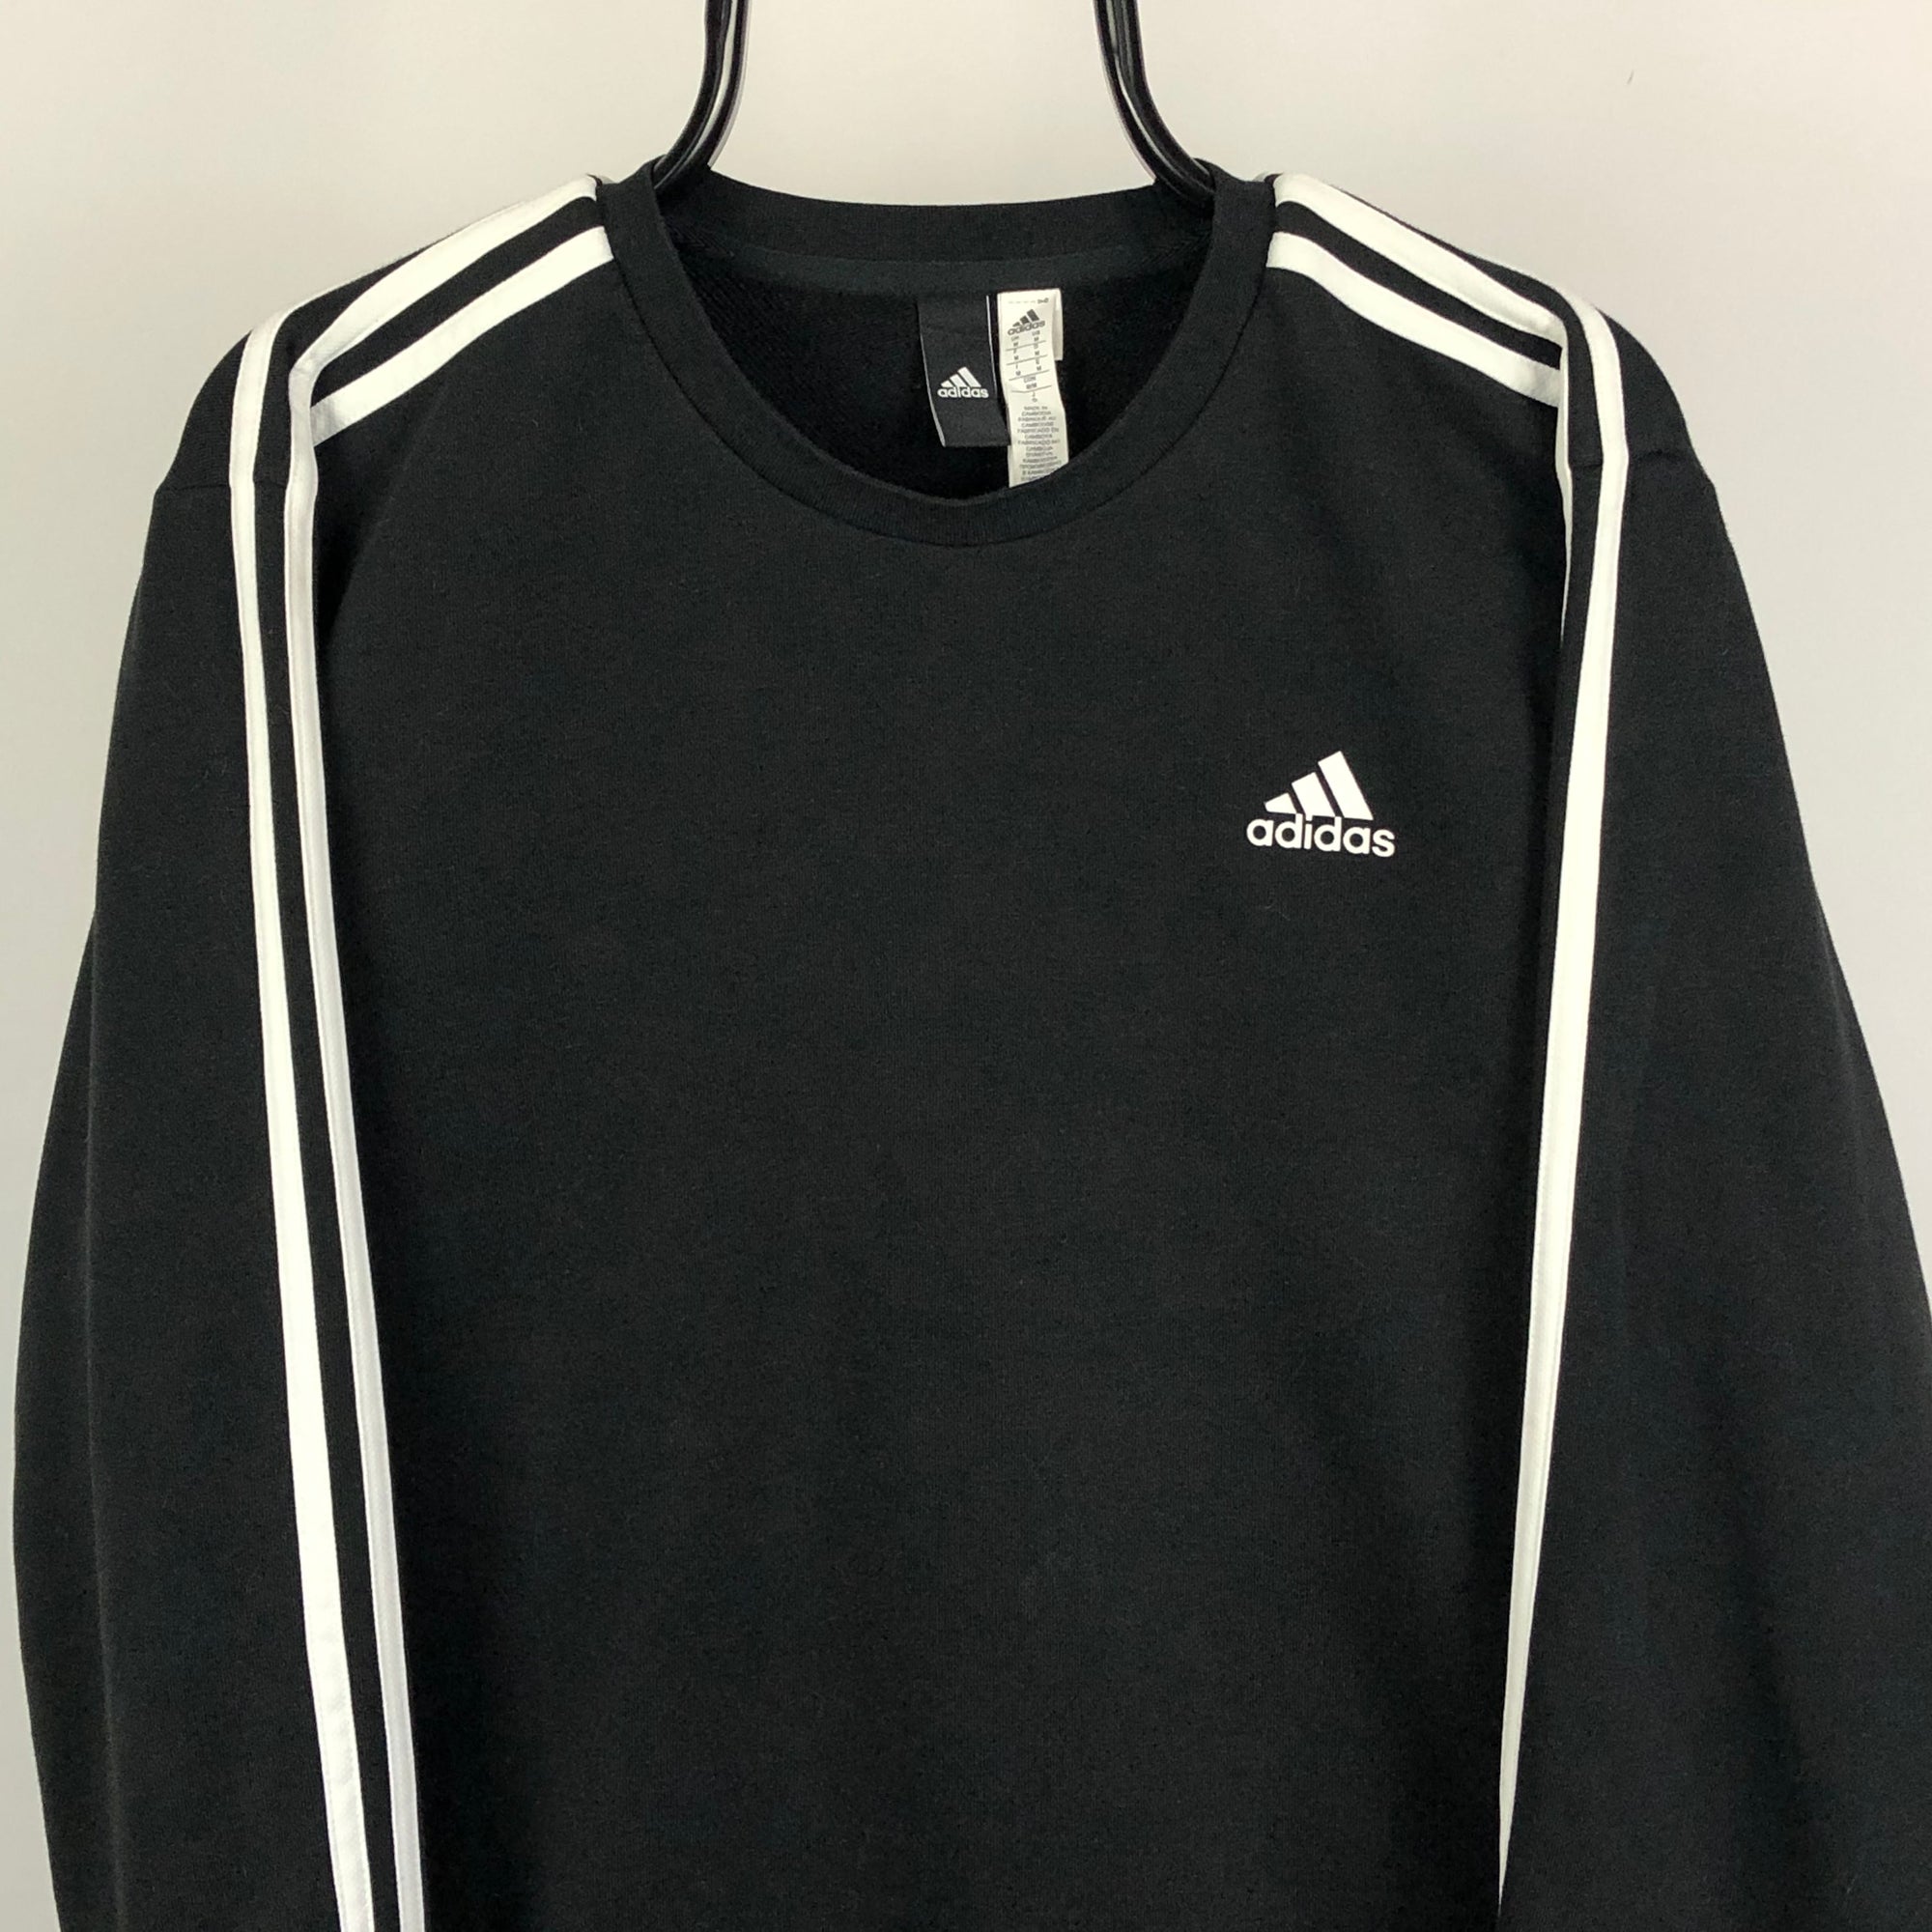 Adidas Sweatshirt in Black/White - Men's Medium/Women's Large